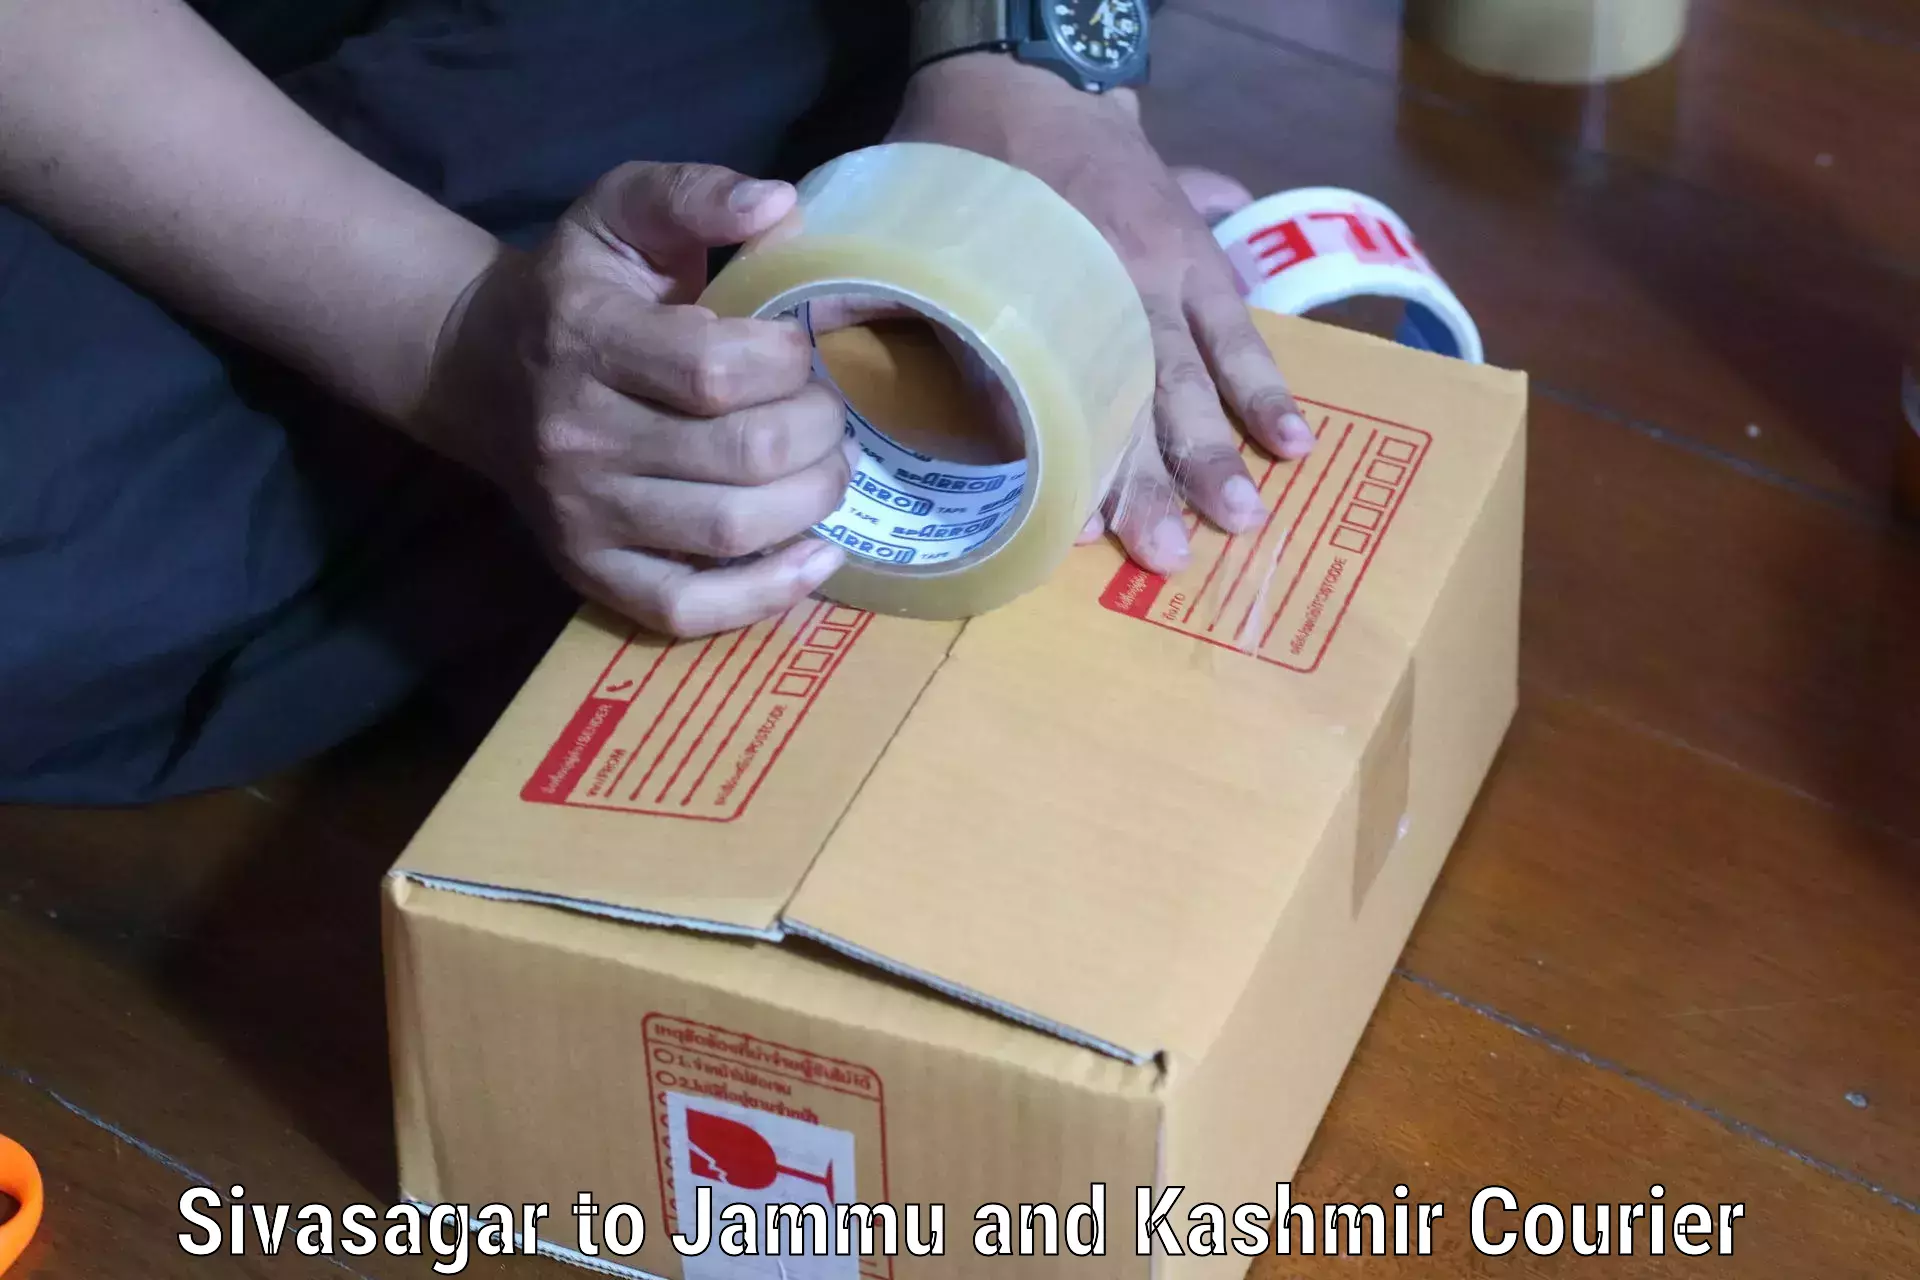 Secure shipping methods Sivasagar to Jammu and Kashmir